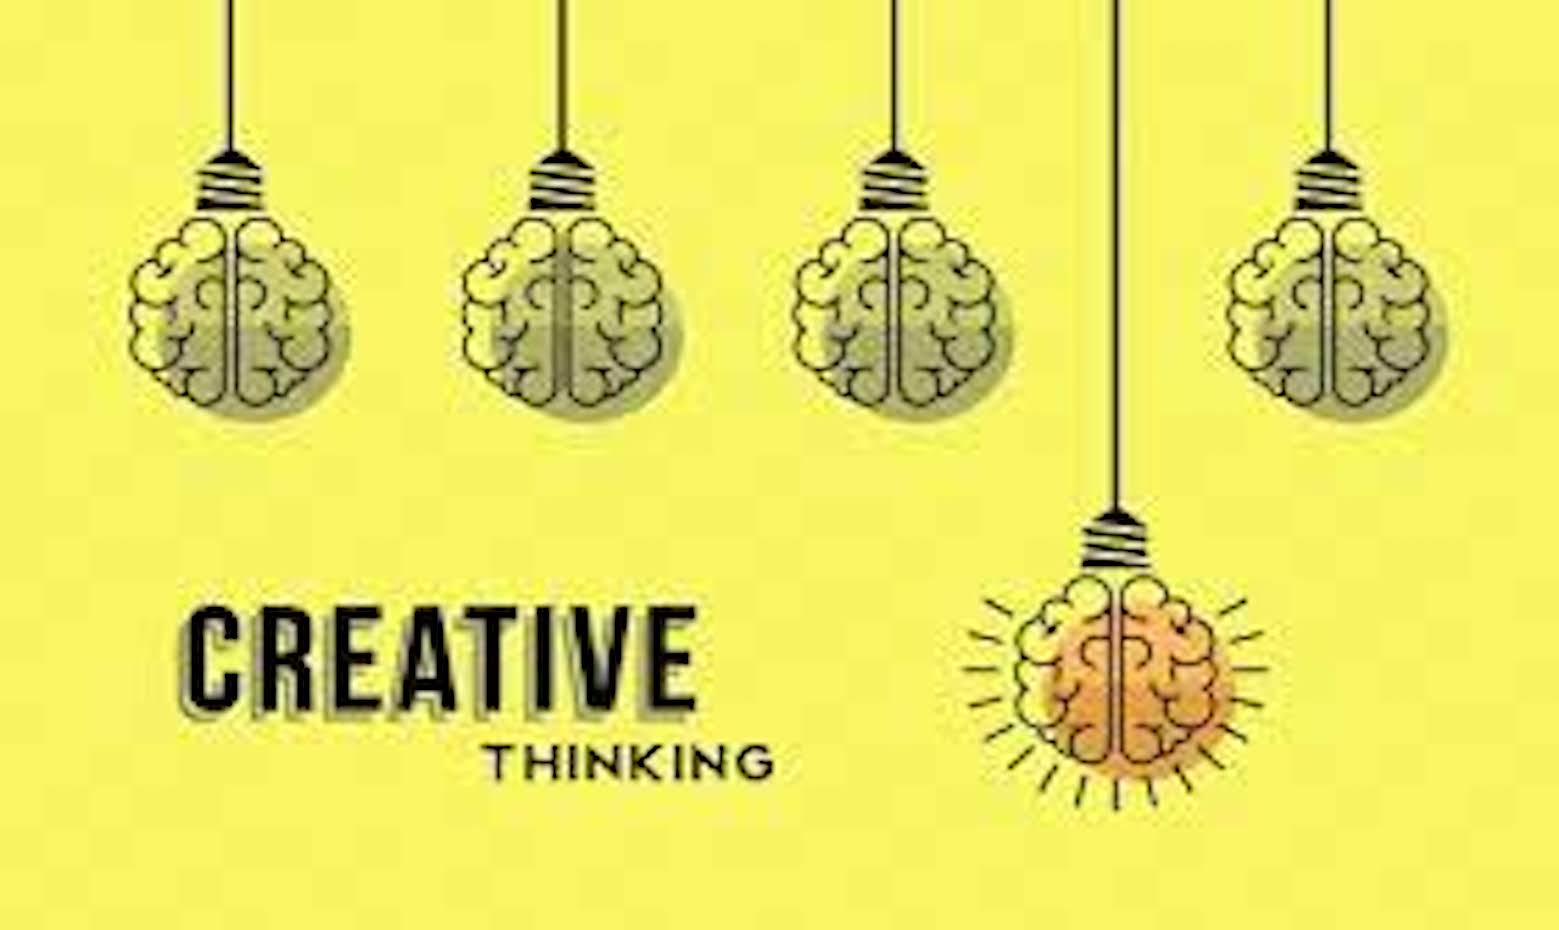 Tư duy sáng tạo là gì? Phương pháp rèn luyện tư duy sáng tạo?